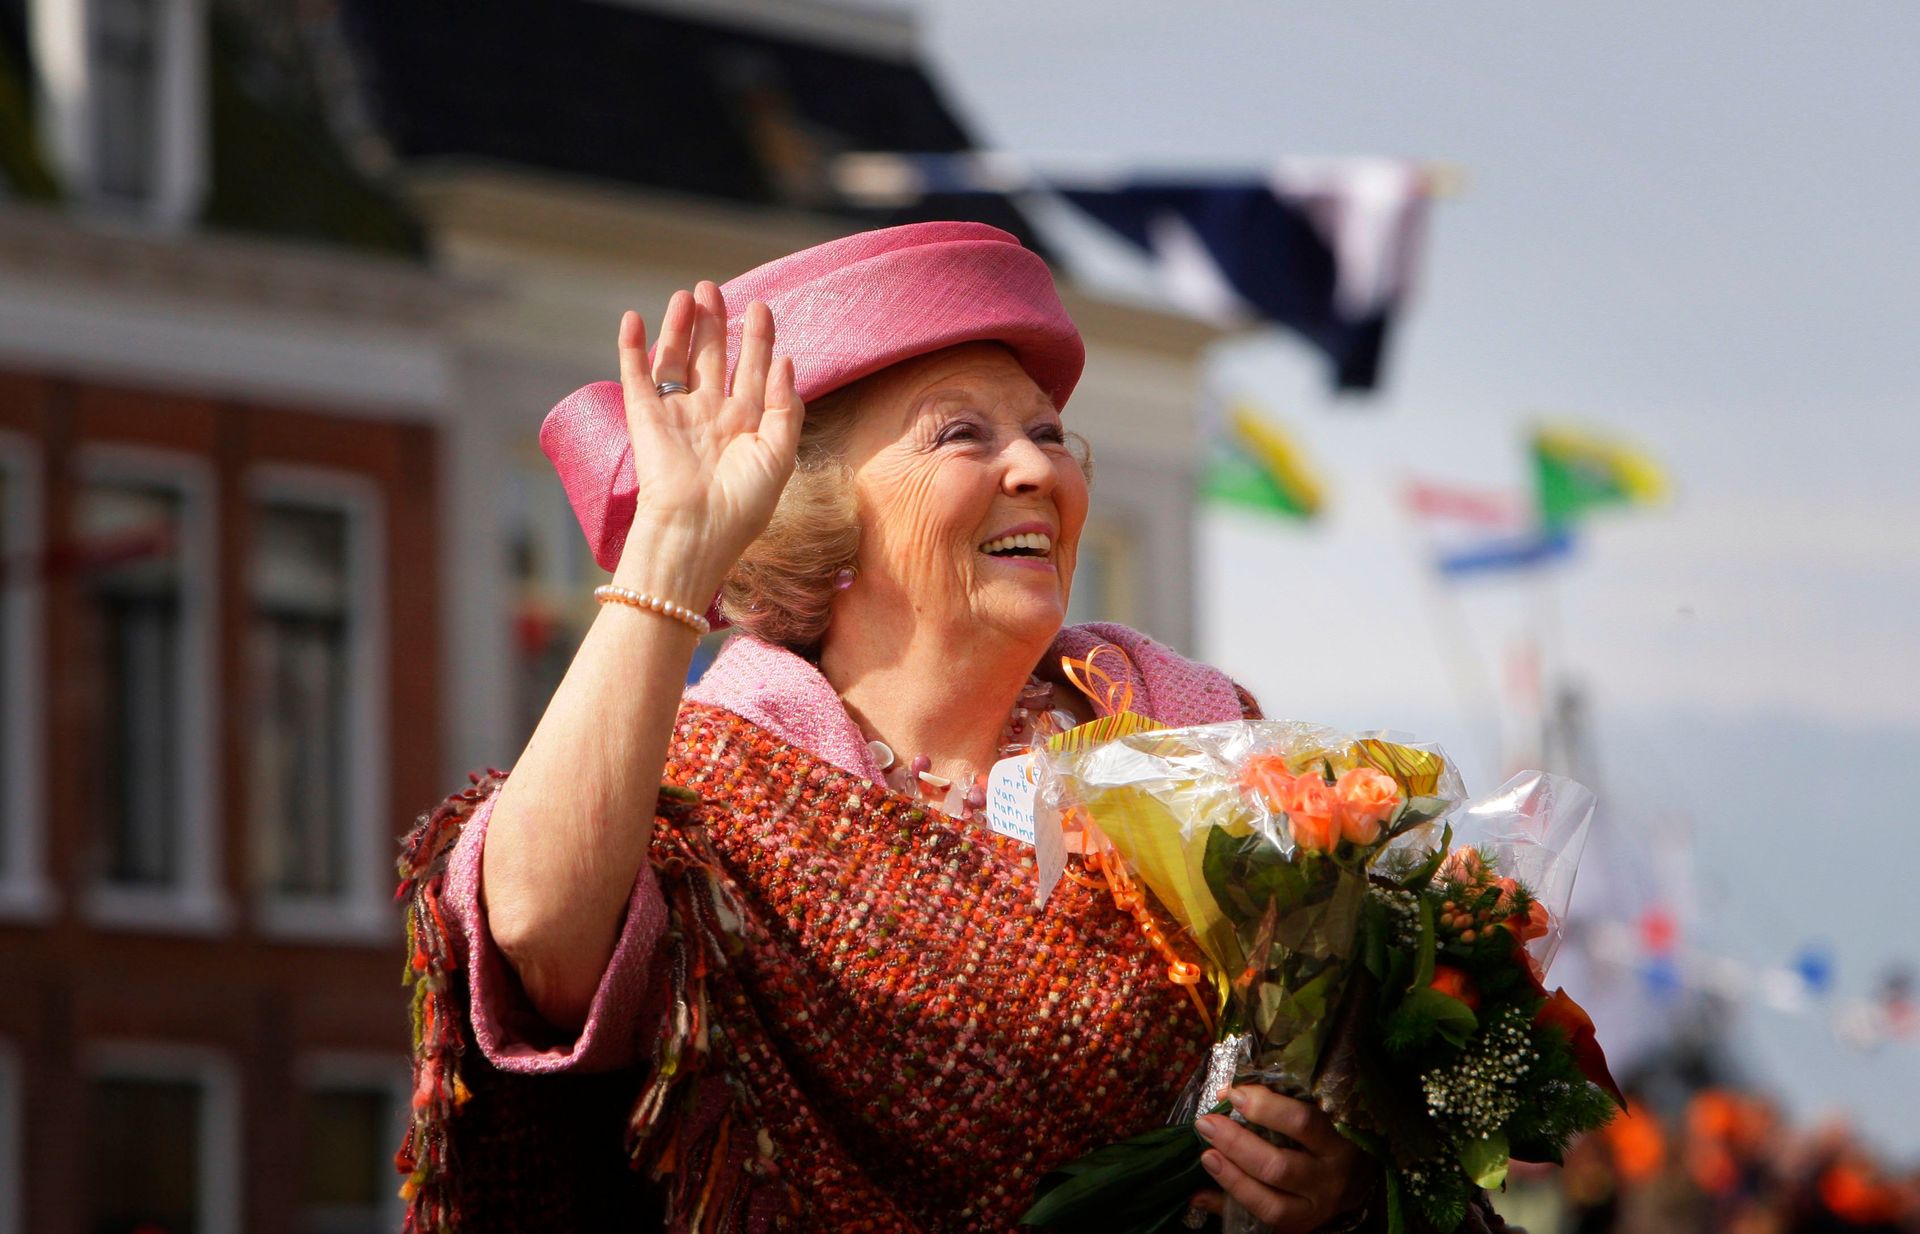 Koninginnedag 2008 in Makkum en Franeker. In 1993 vierde Beatrix ook Koninginnedag in deze regio.